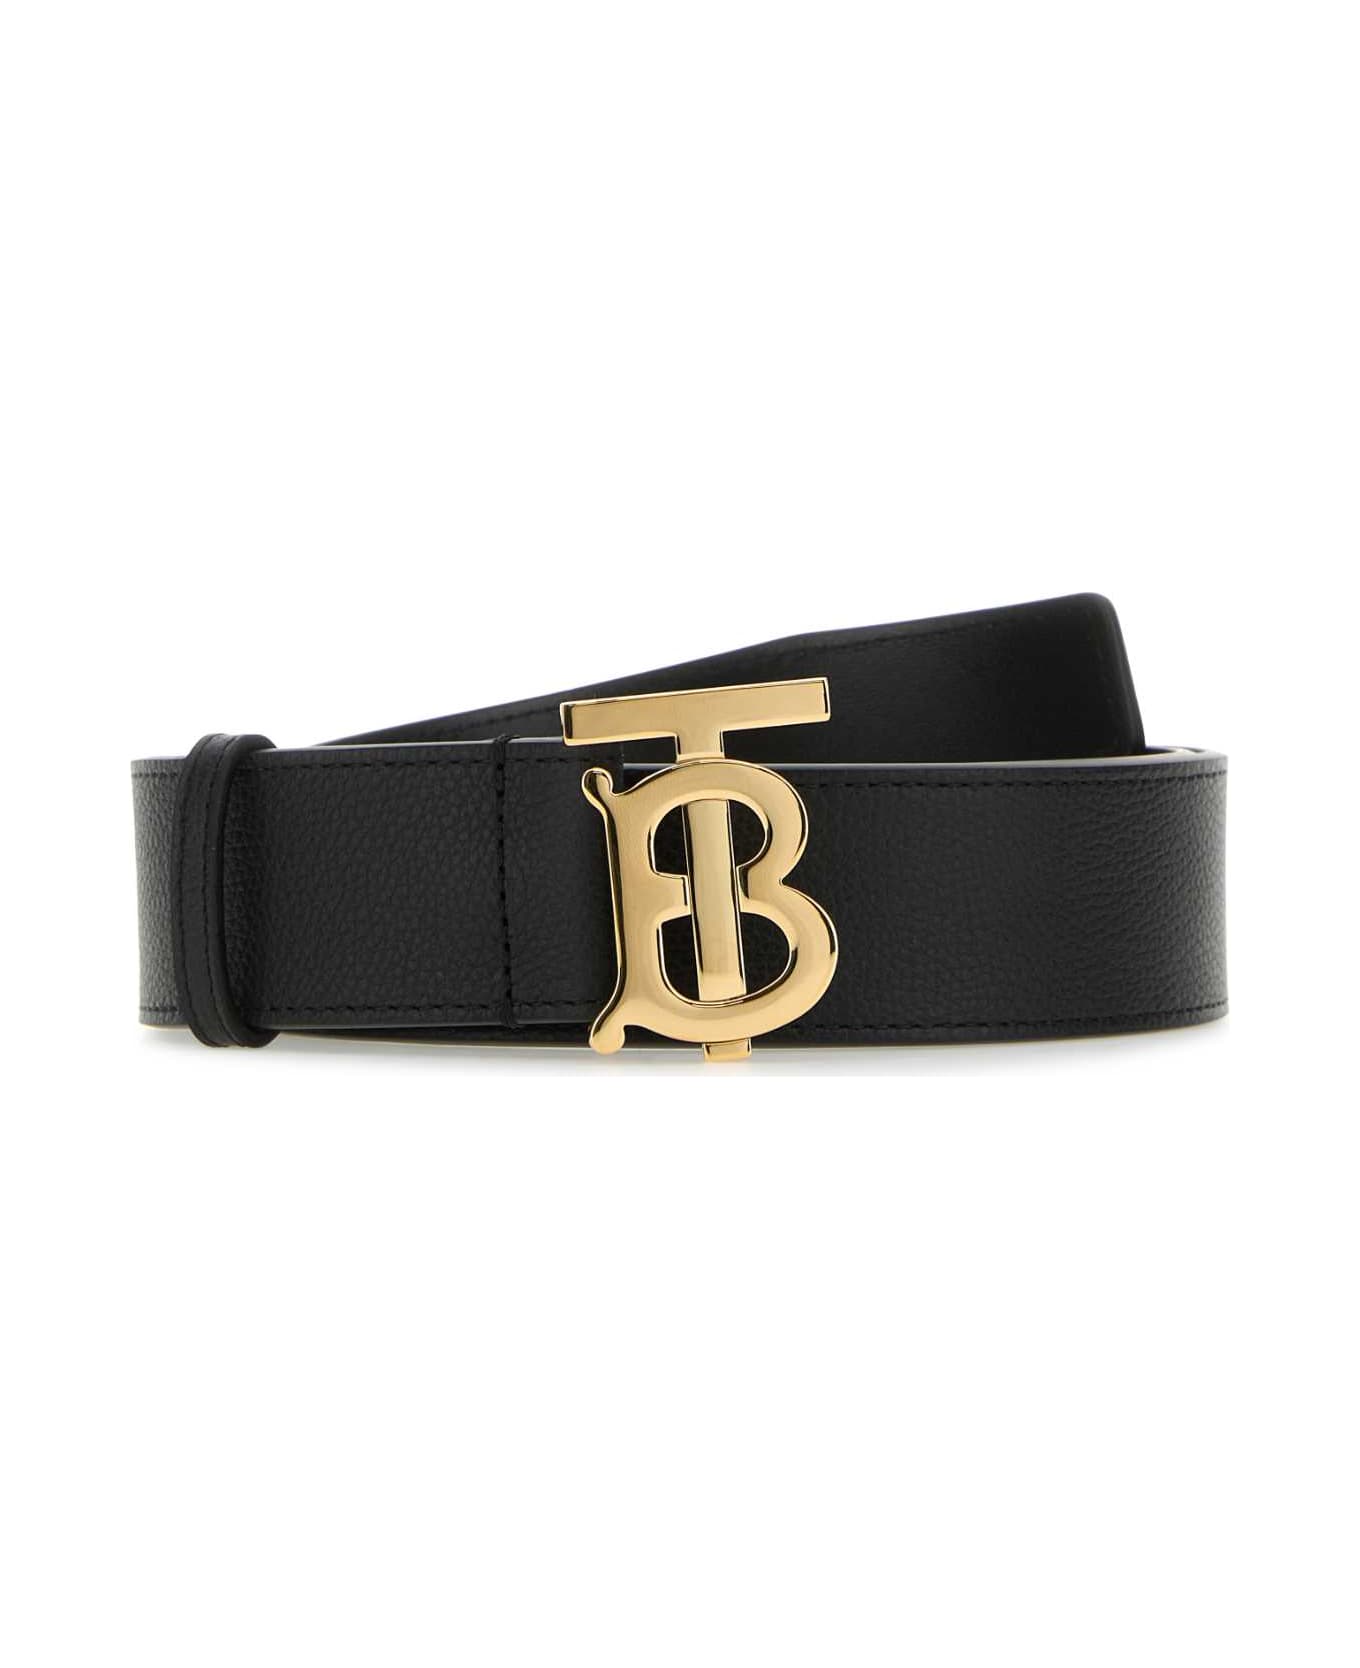 Burberry Black Leather Belt - BLACKGOLD ベルト